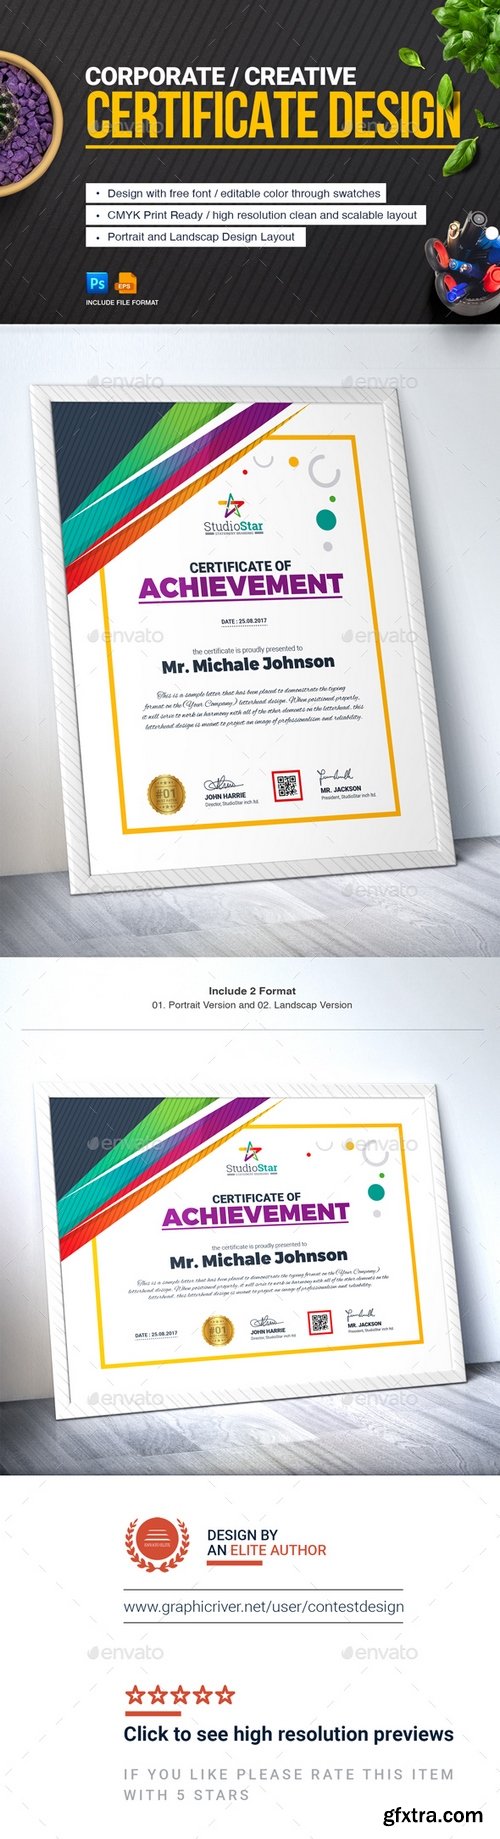 Graphicriver - Certificate Design Template | Certificate of Achievement 20766340